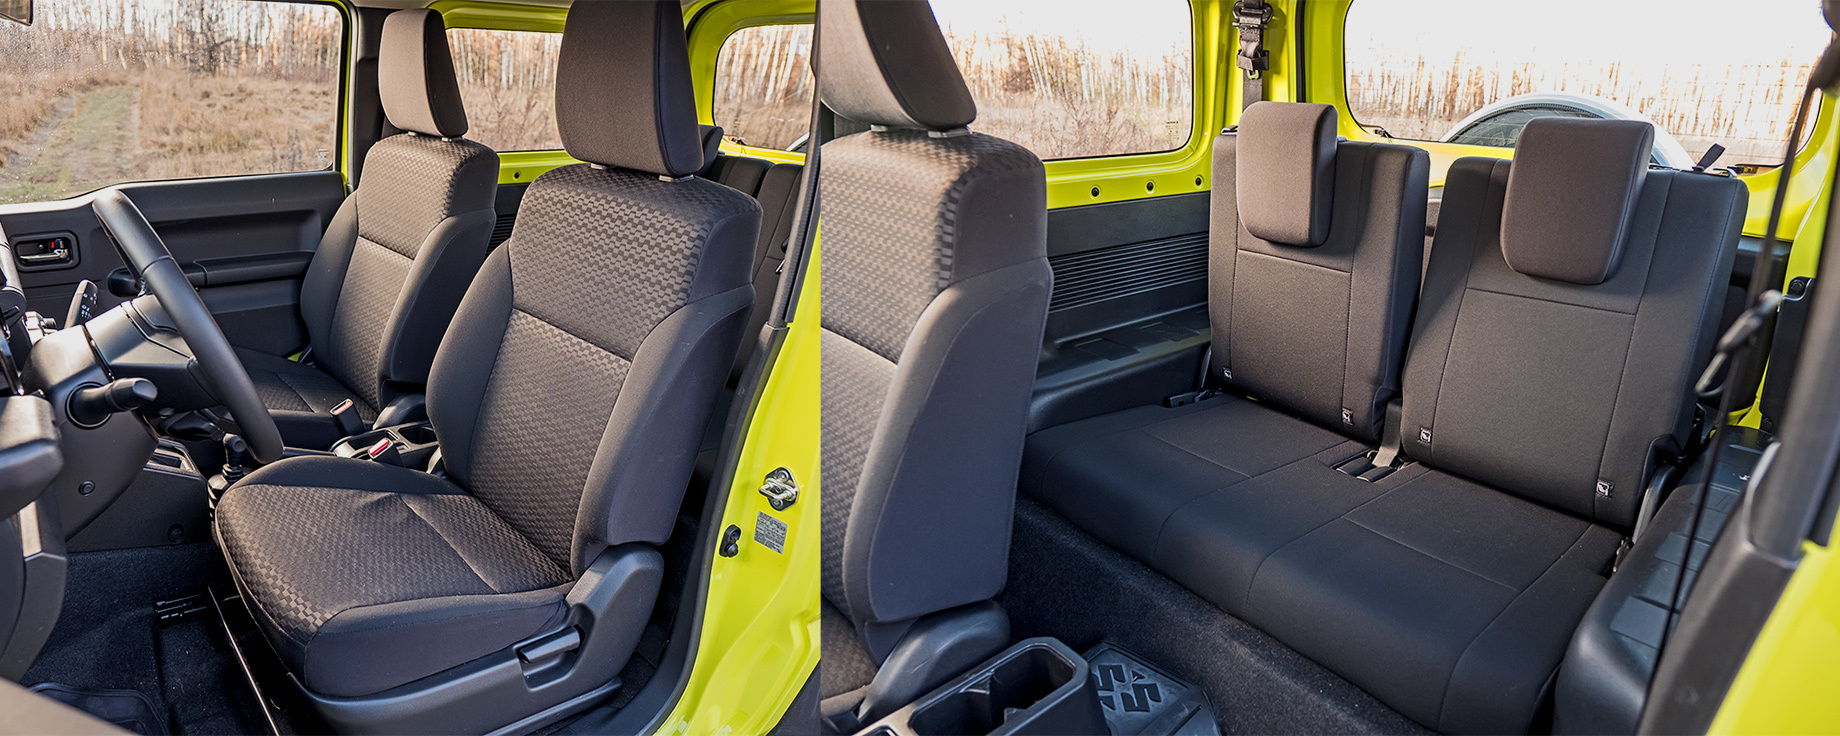 Suzuki Jimny Kundenprojekt - Vorder-/ und Rücksitze wurden mit neuen  Sitzbezügen ausgestattet. Für den Mittelstreifen wurde da…